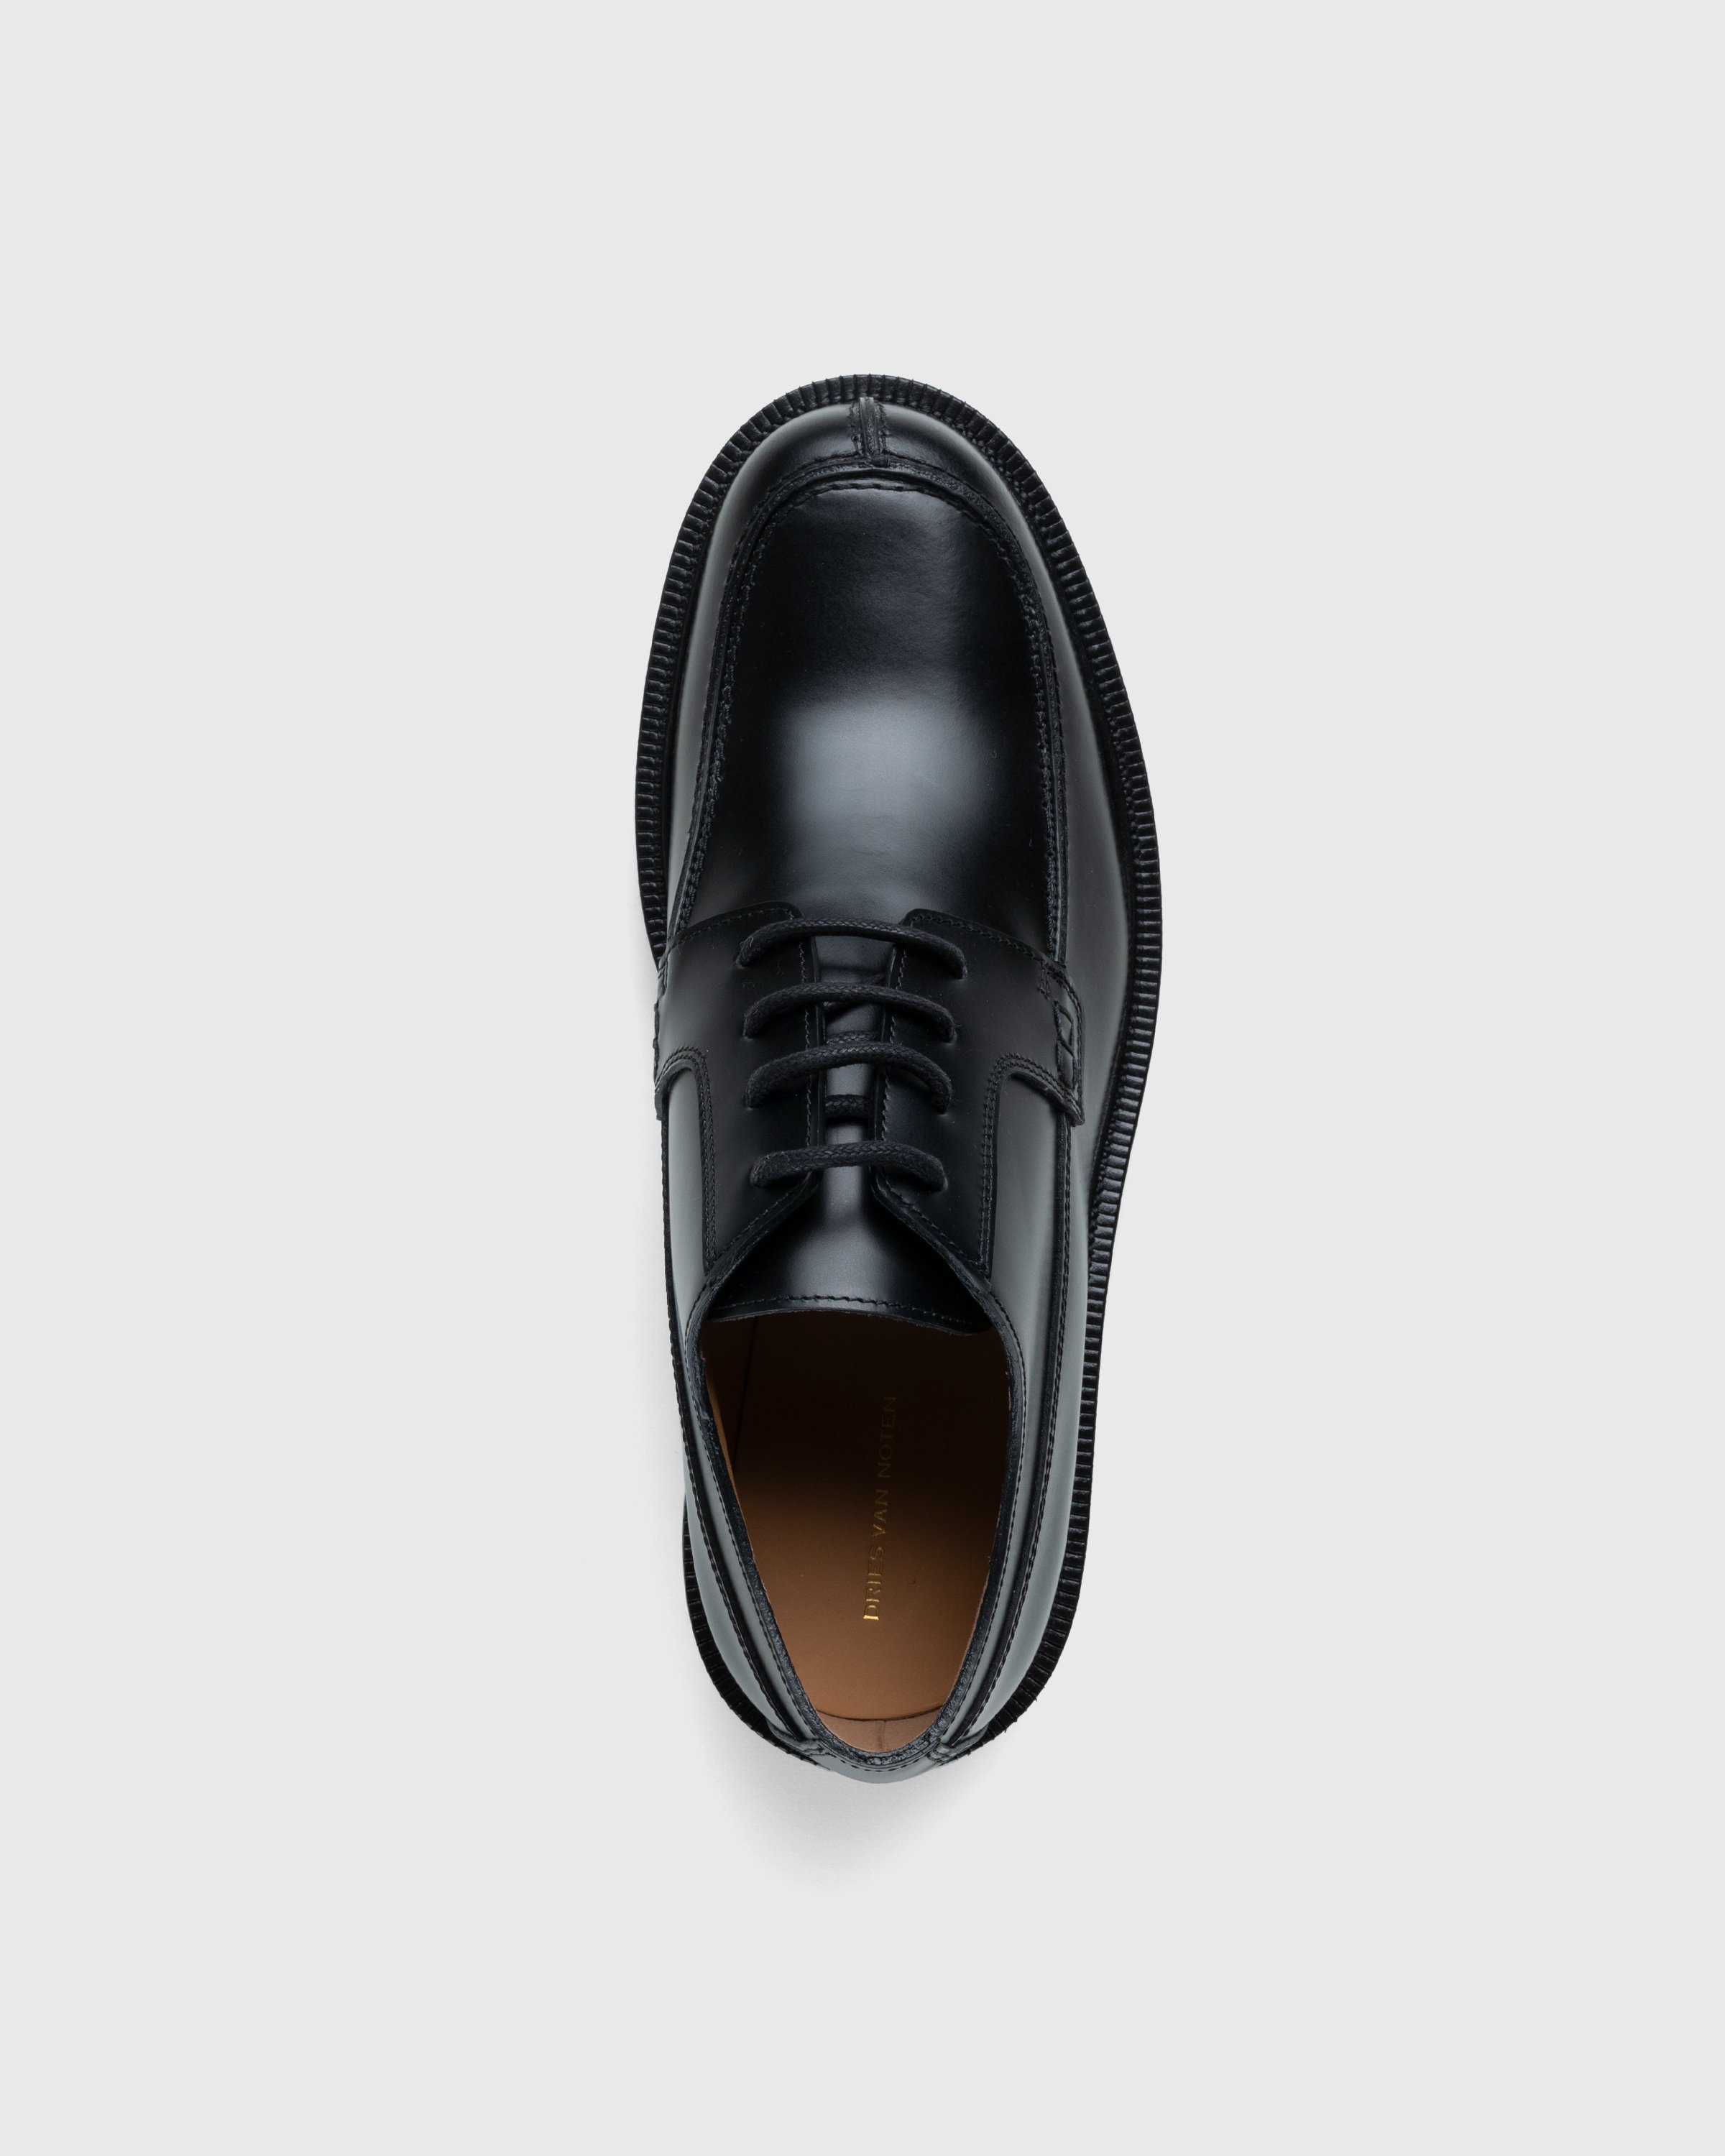 Dries van Noten - Patent Leather Derbies - Footwear - Black - Image 5